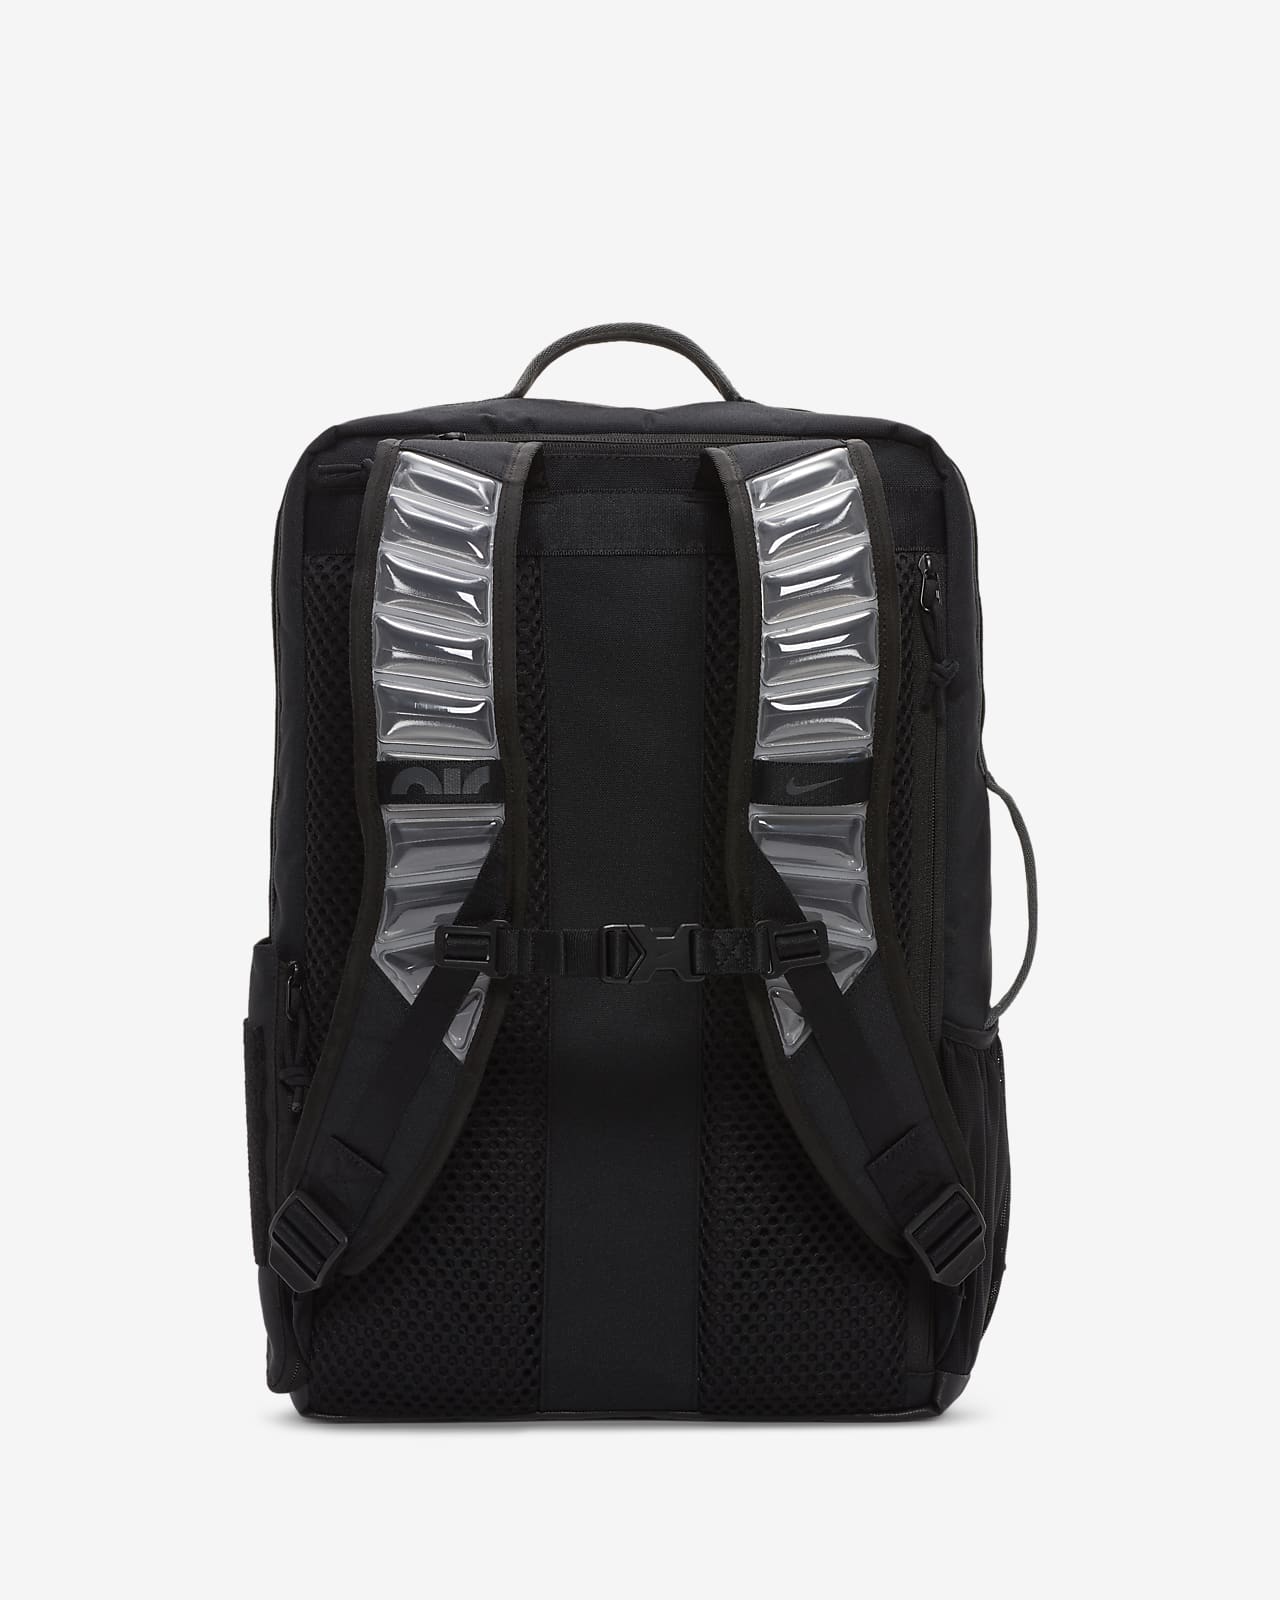 nike elite backpack 219